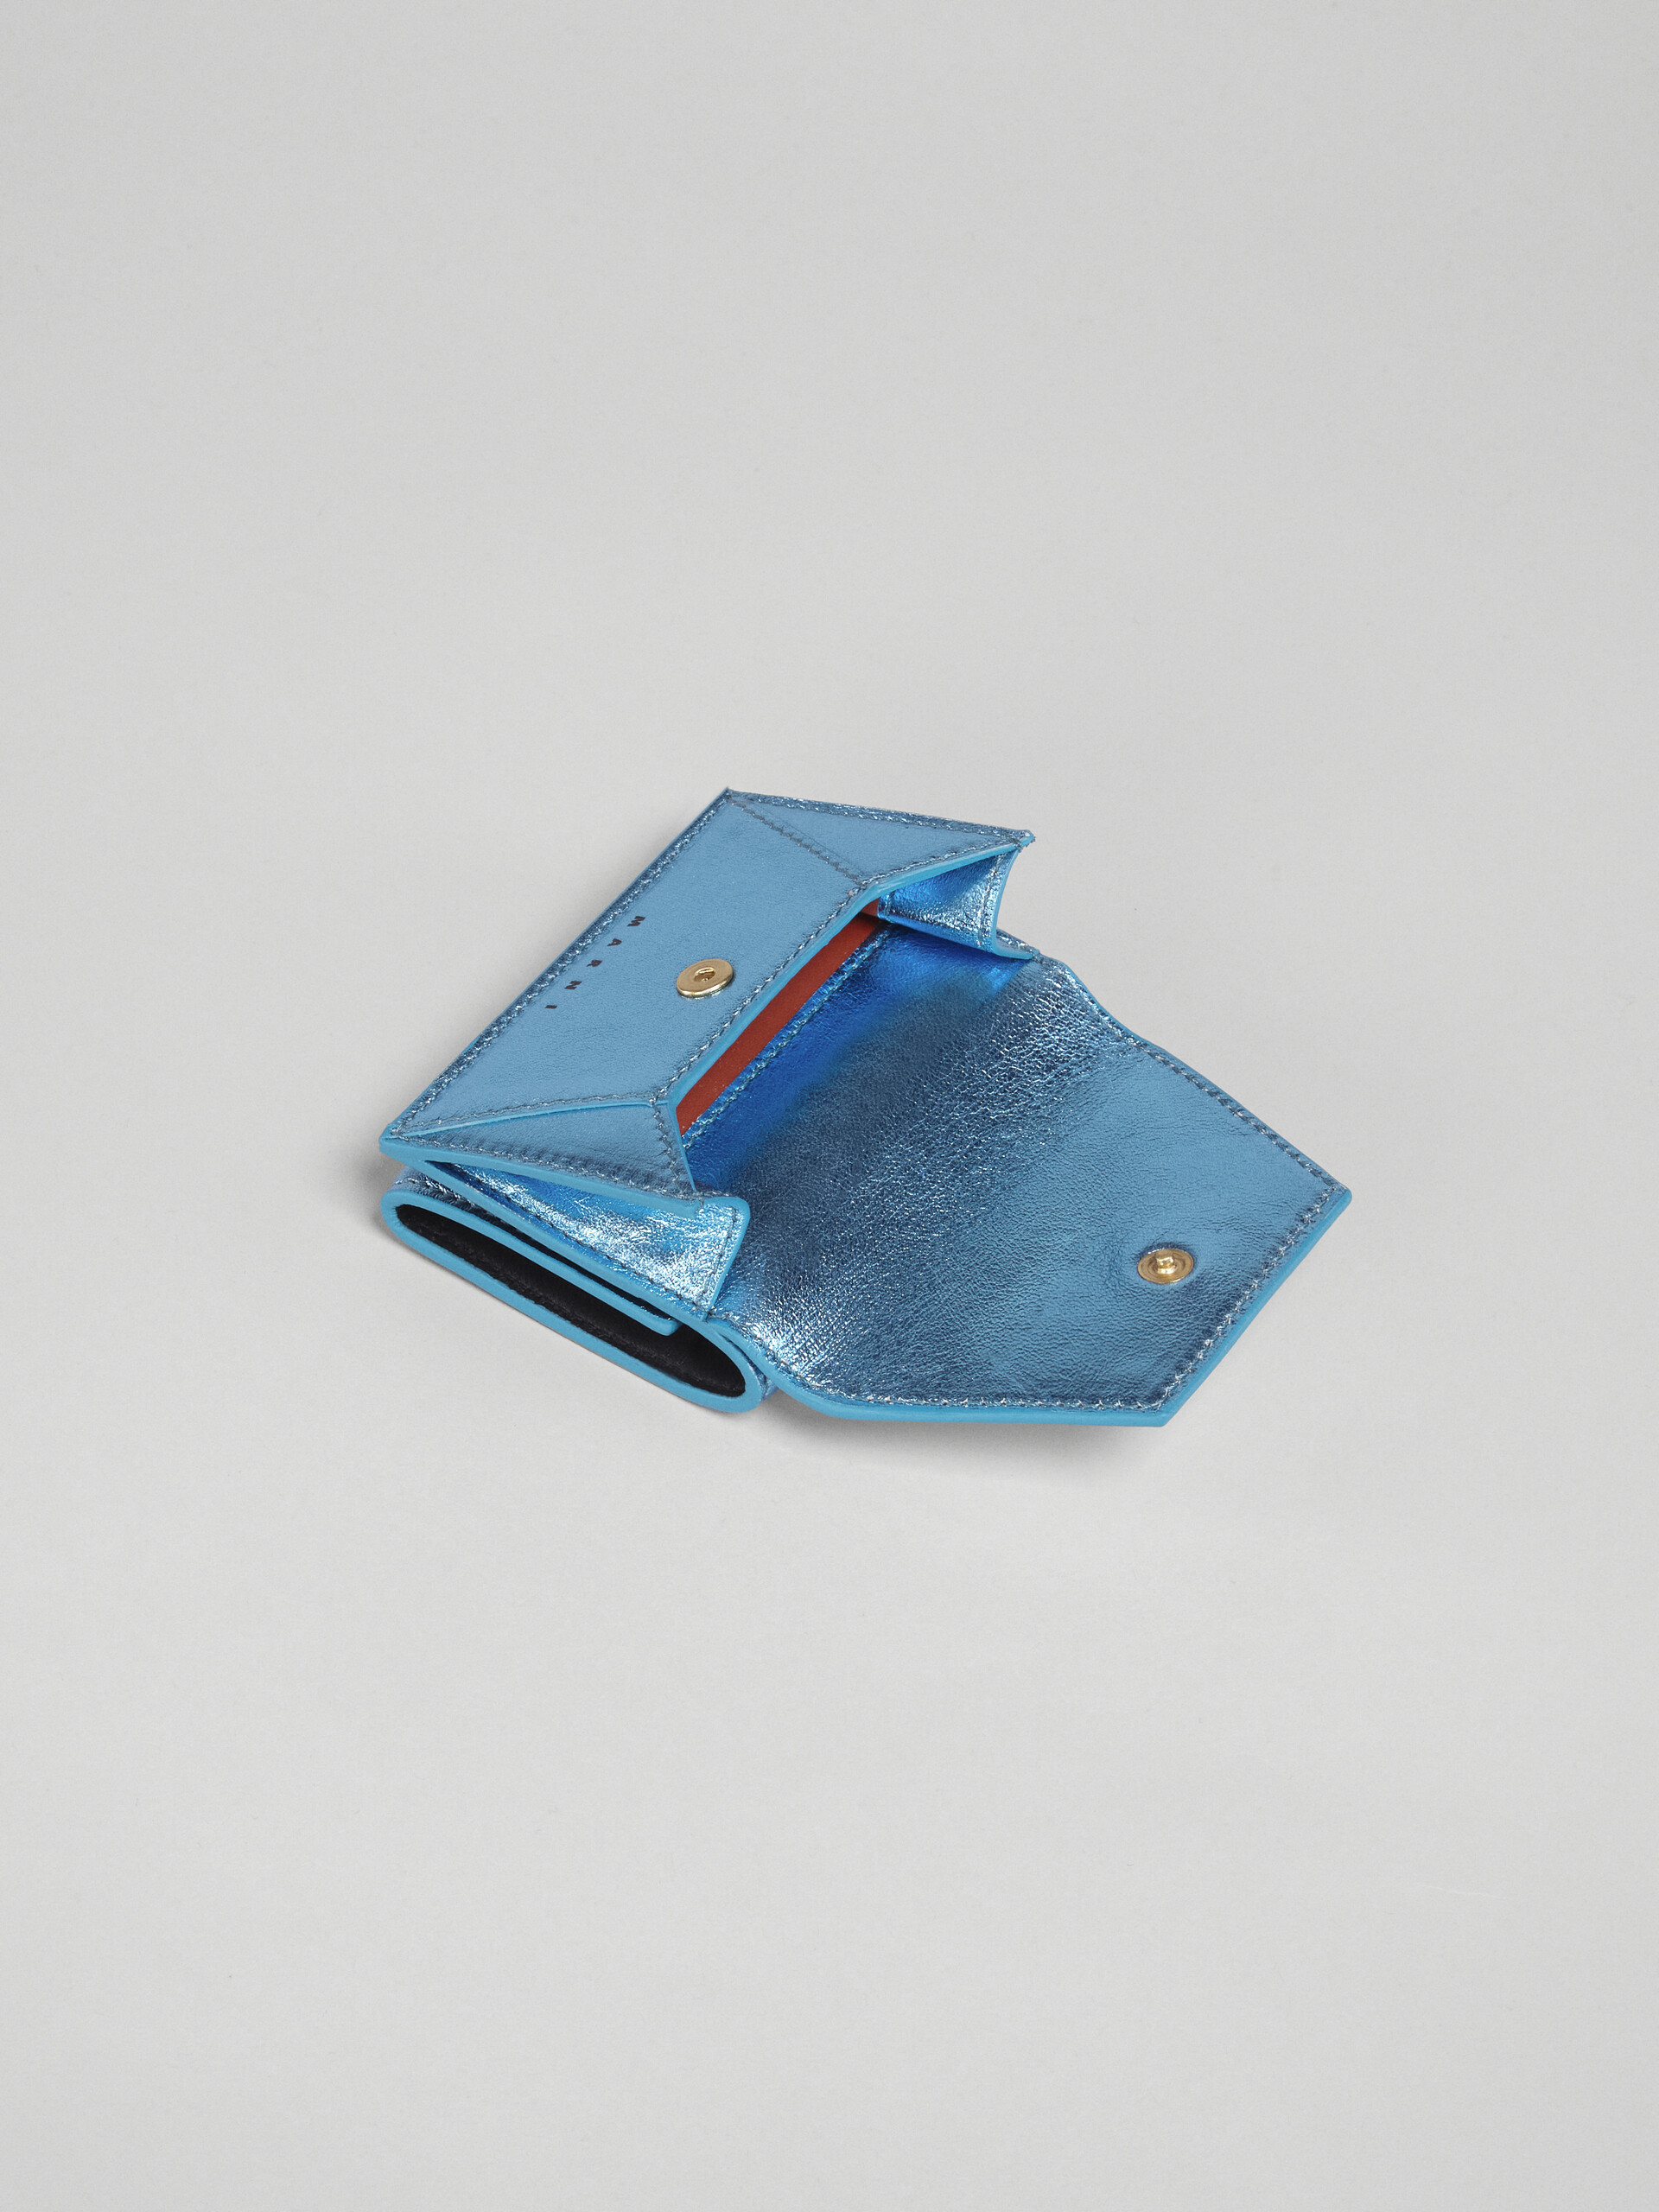 ブルーメタリック調 ナッパレザー三つ折りウォレット - 財布 - Image 5